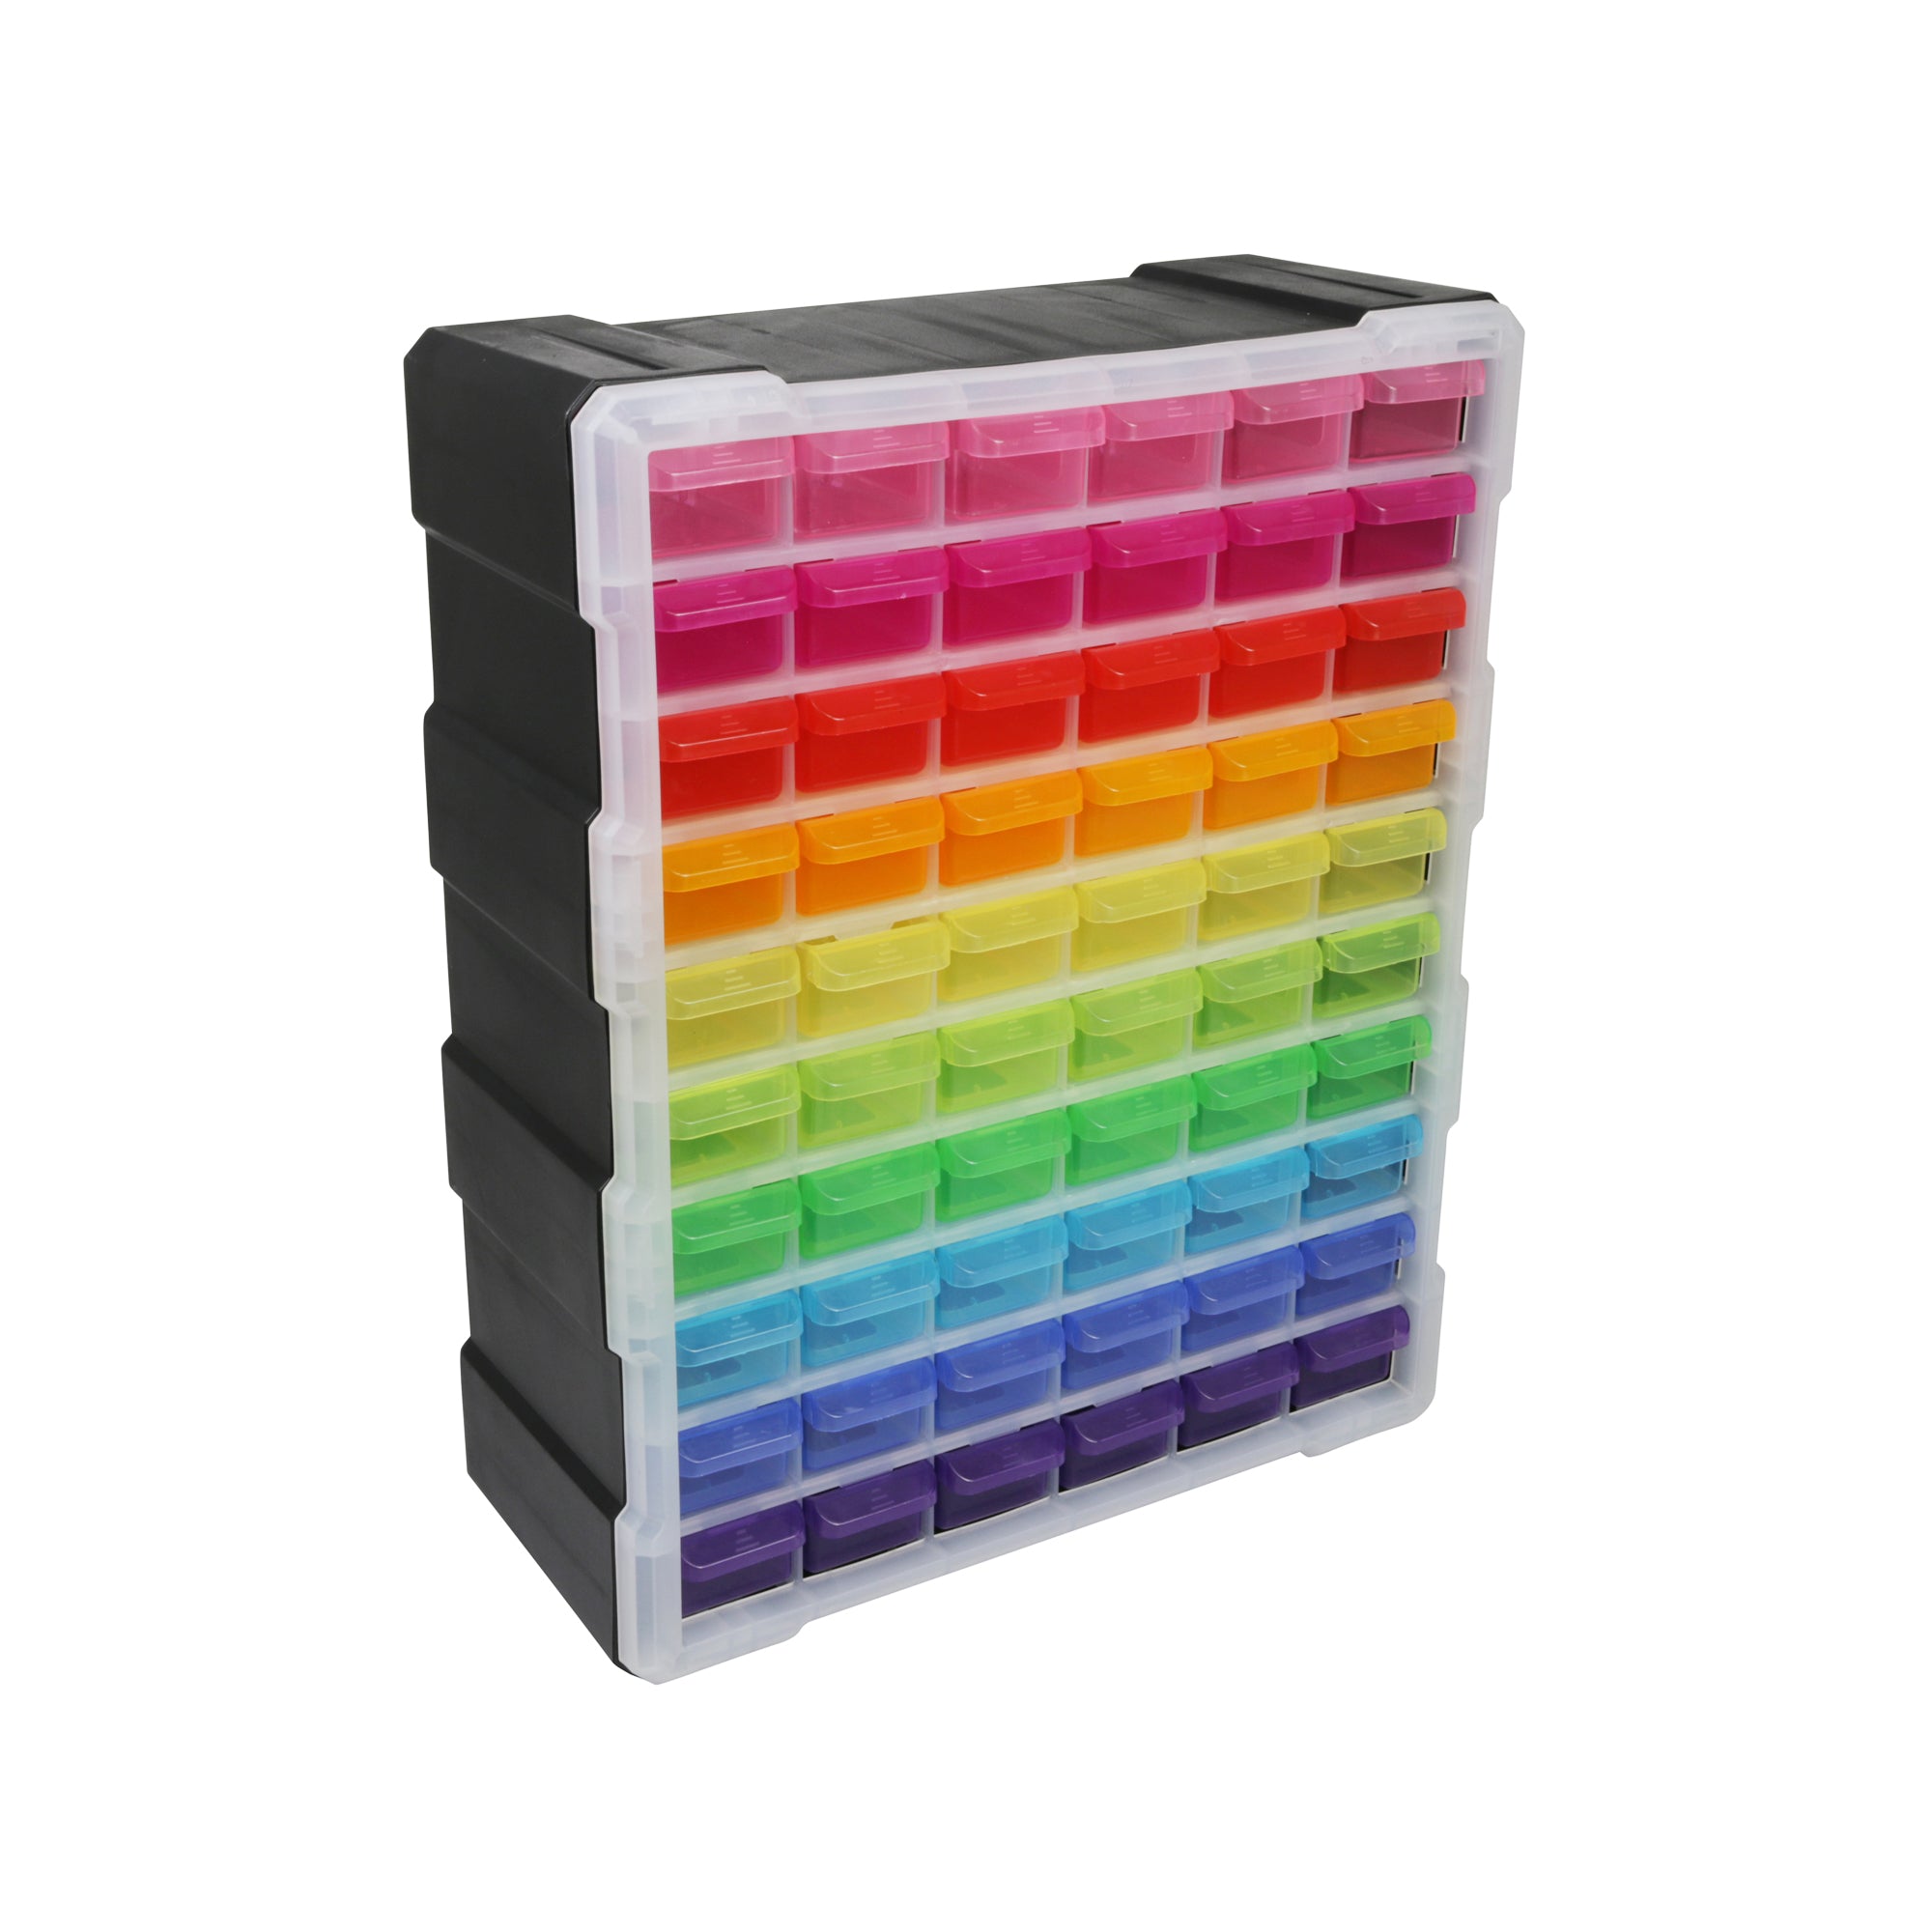 60 Drawer Organizer, Multicolor MultiPurpose Plastic